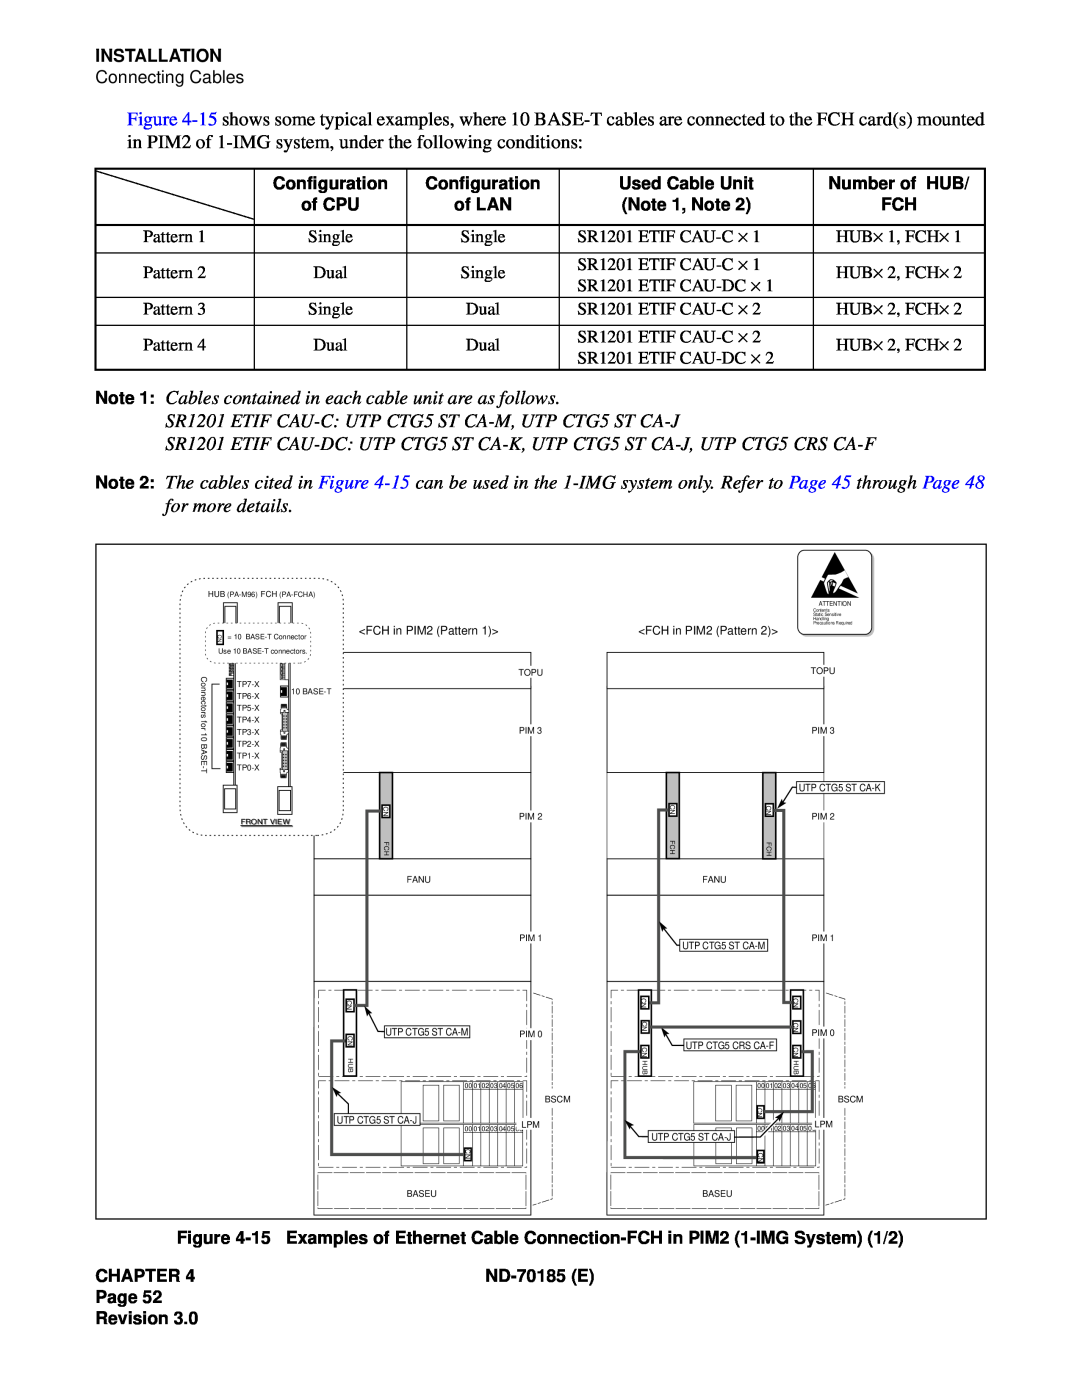 NEC NEAX2400 system manual Installation 